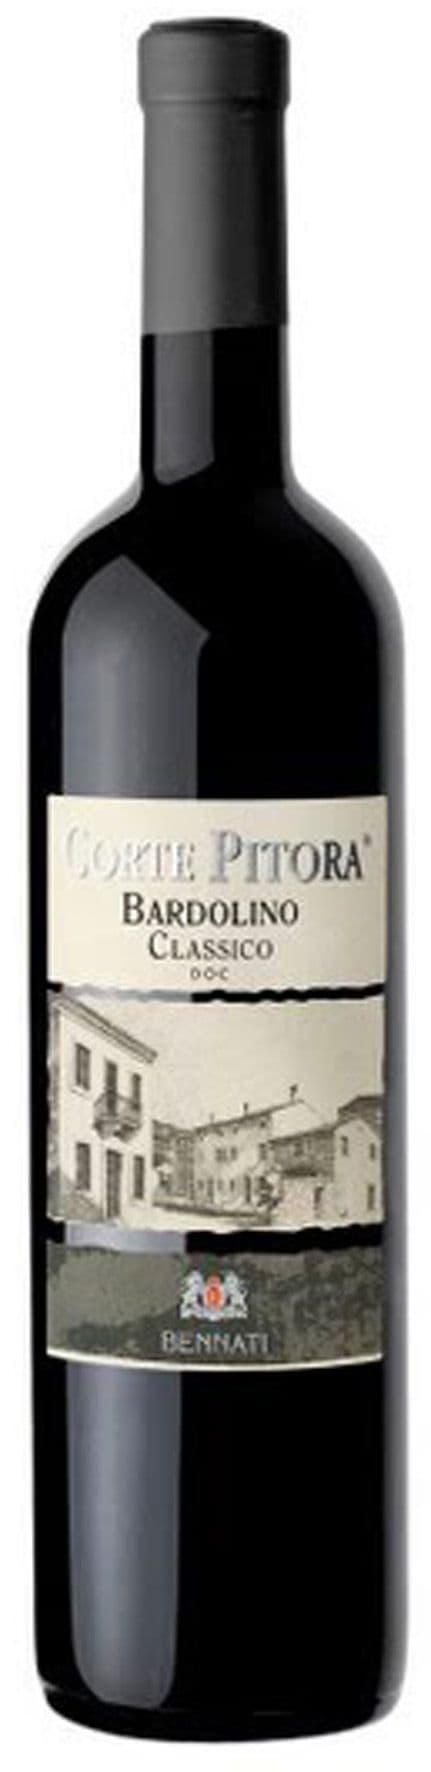 Bardolino Classico 'Corte Pitora'